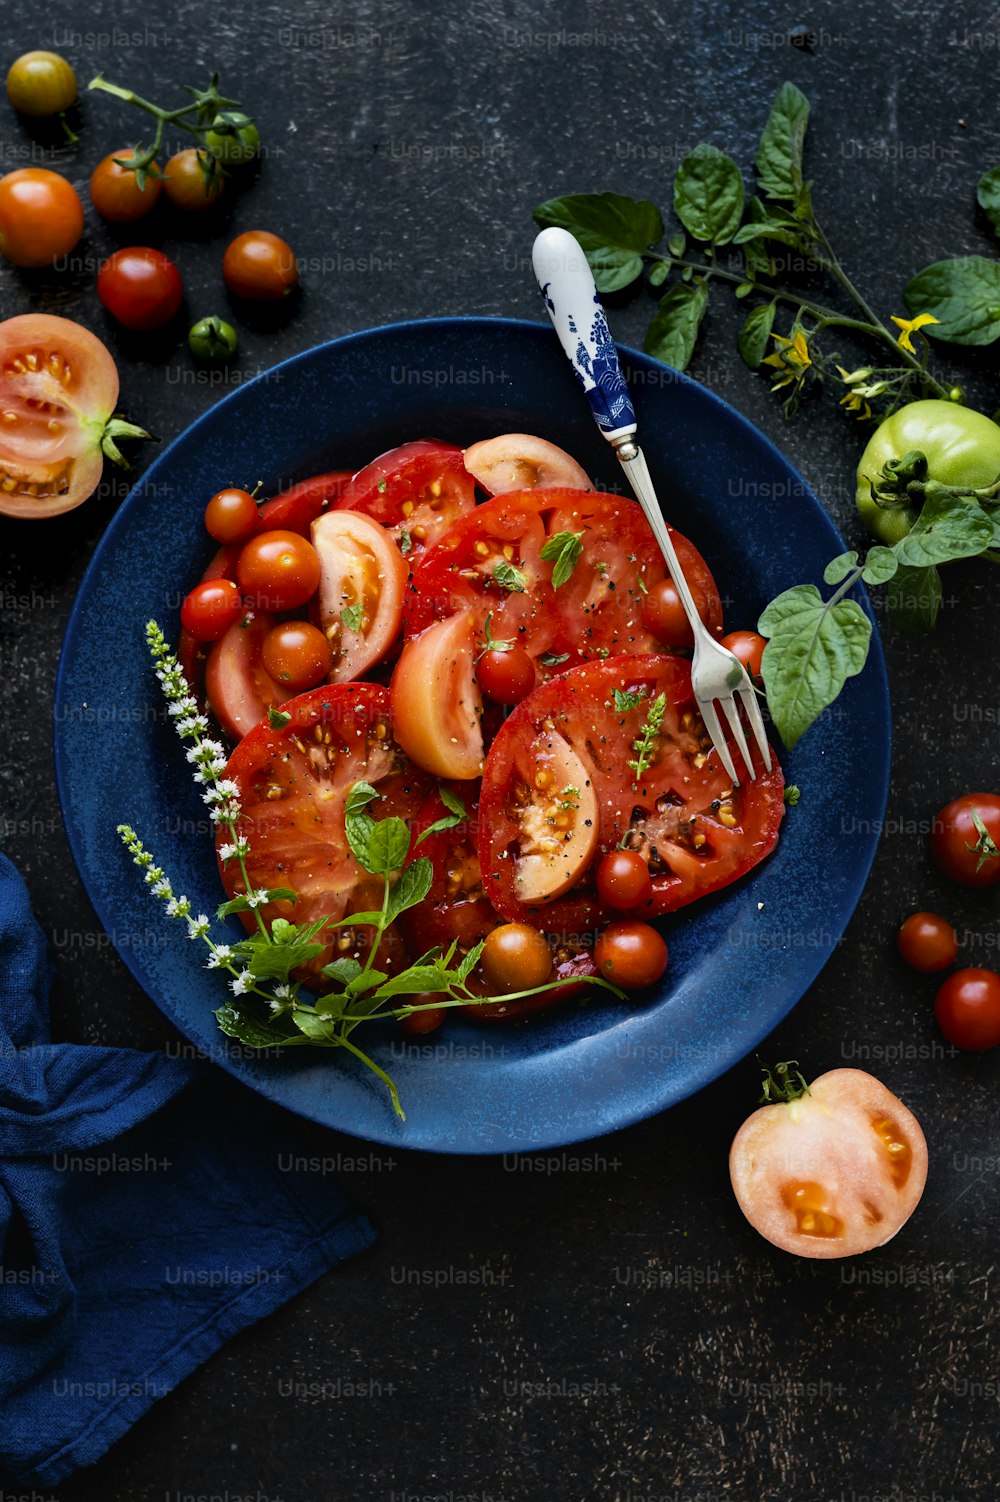 얇게 썬 토마토와 포크를 얹은 파란색 접시